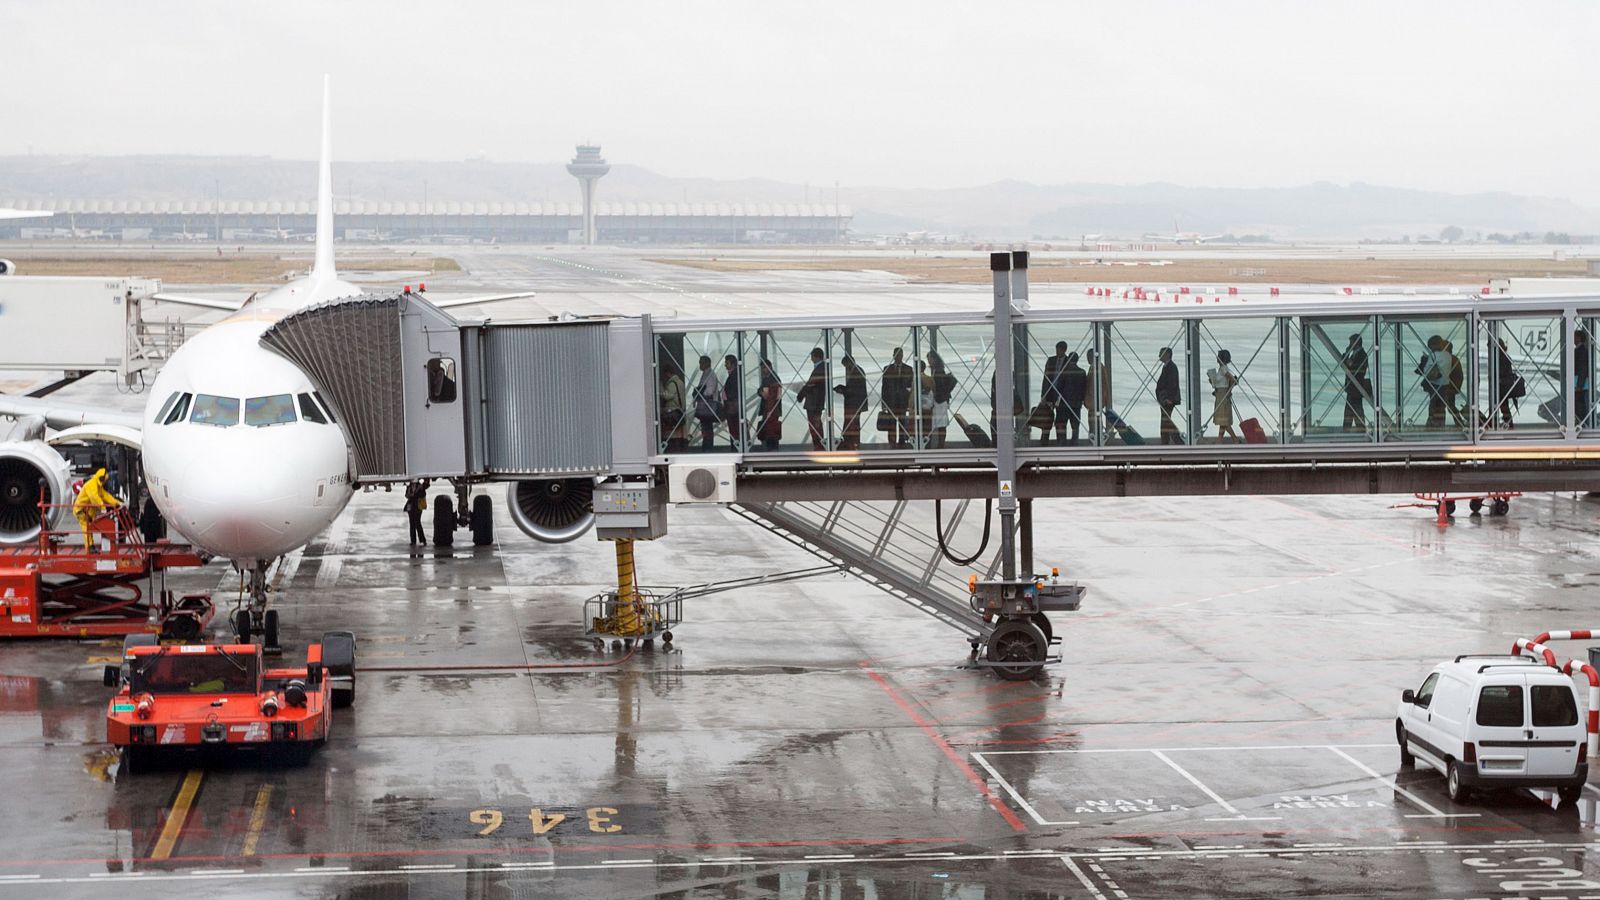 El reconocimiento facial llega a los aeropuertos: ¿cómo funciona?